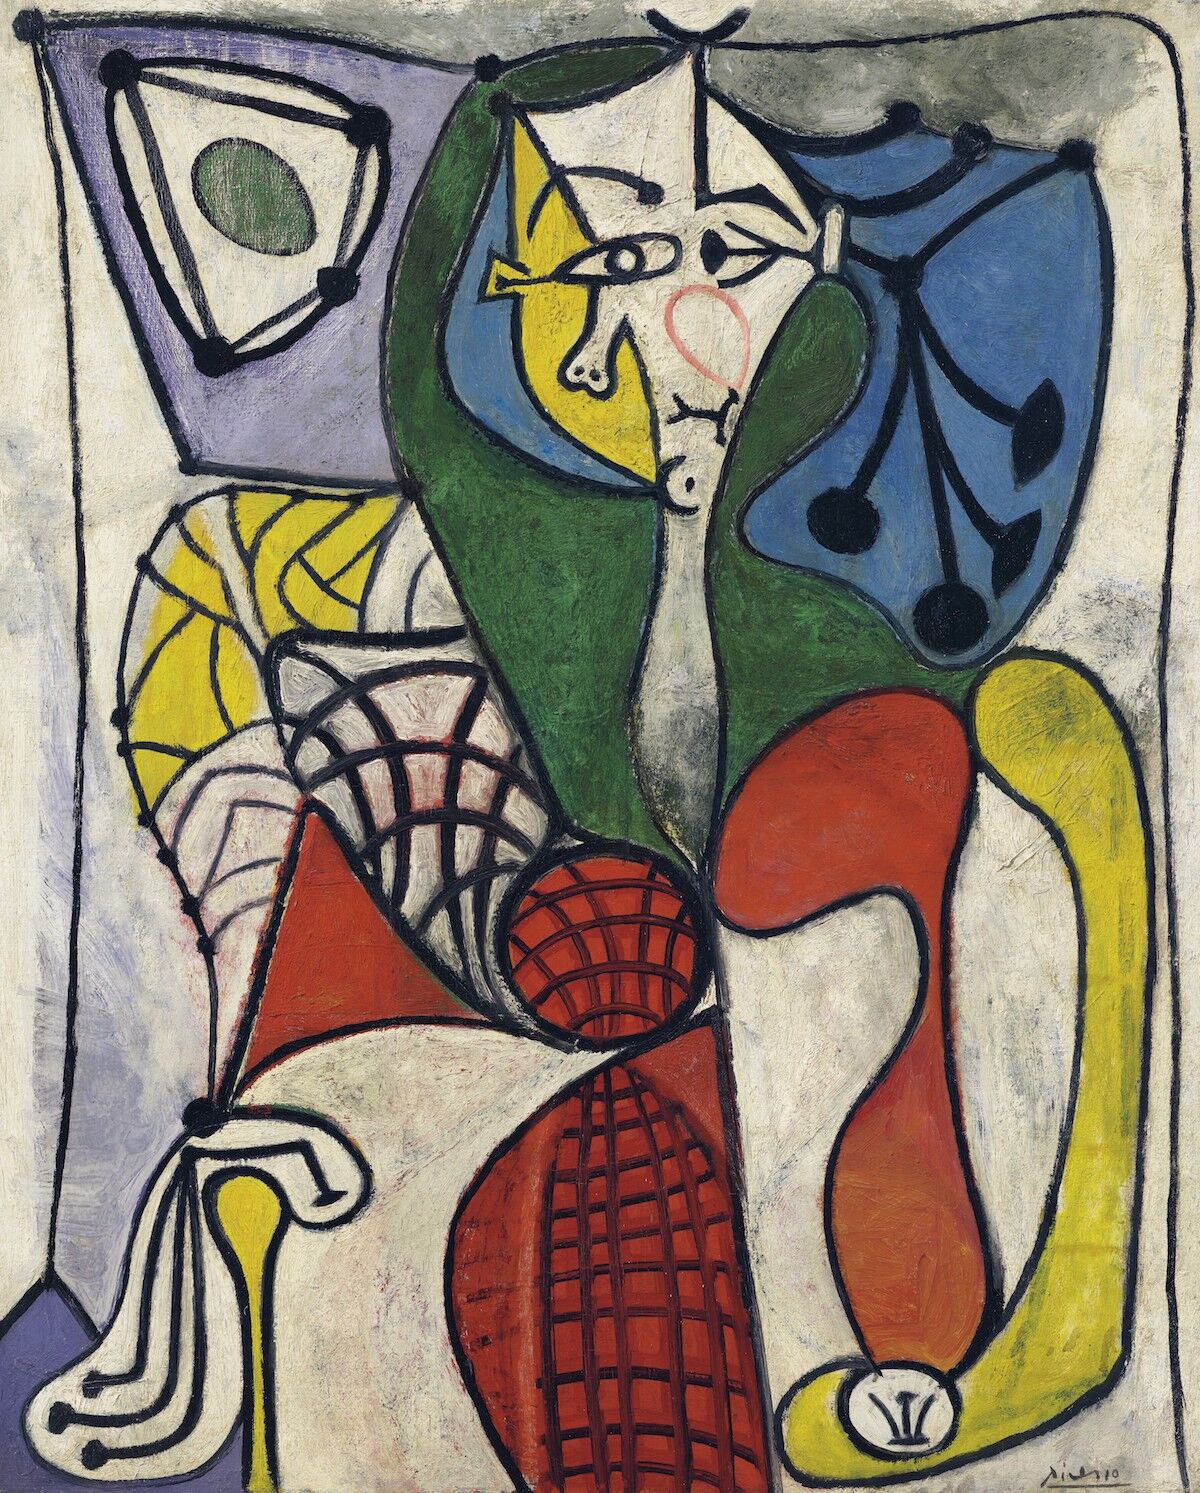 Pablo Picasso, Femme dans un fauteuil (Françoise), 1948–49. Sold for $13.3 million. Courtesy Christie’s Images Ltd. 